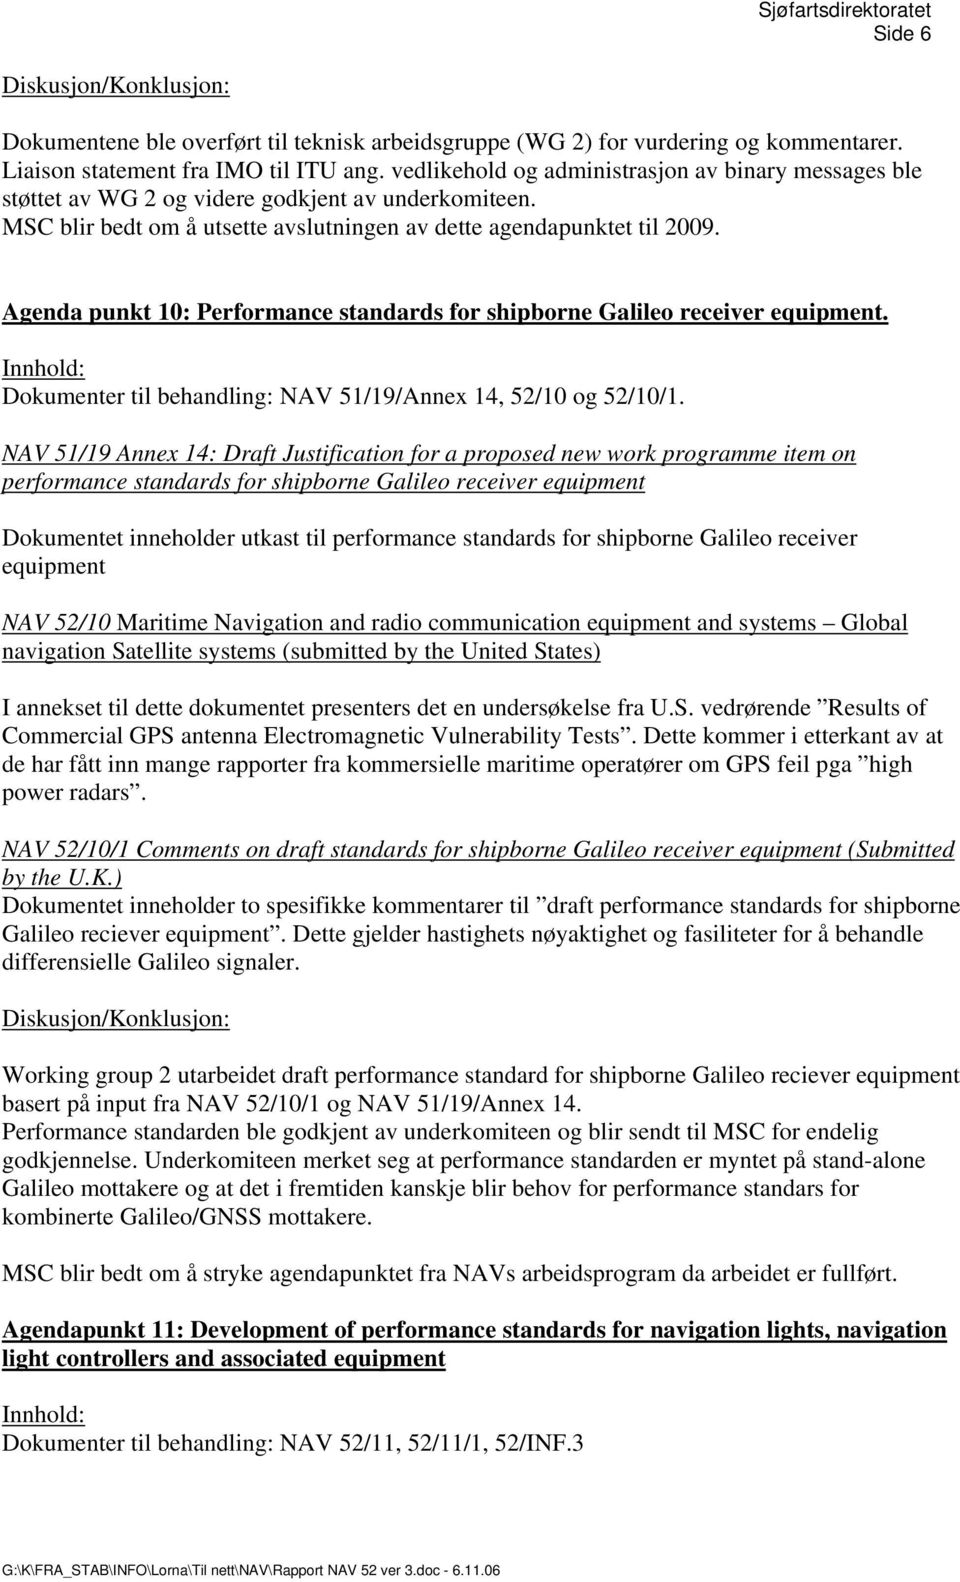 Agenda punkt 10: Performance standards for shipborne Galileo receiver equipment. Dokumenter til behandling: NAV 51/19/Annex 14, 52/10 og 52/10/1.